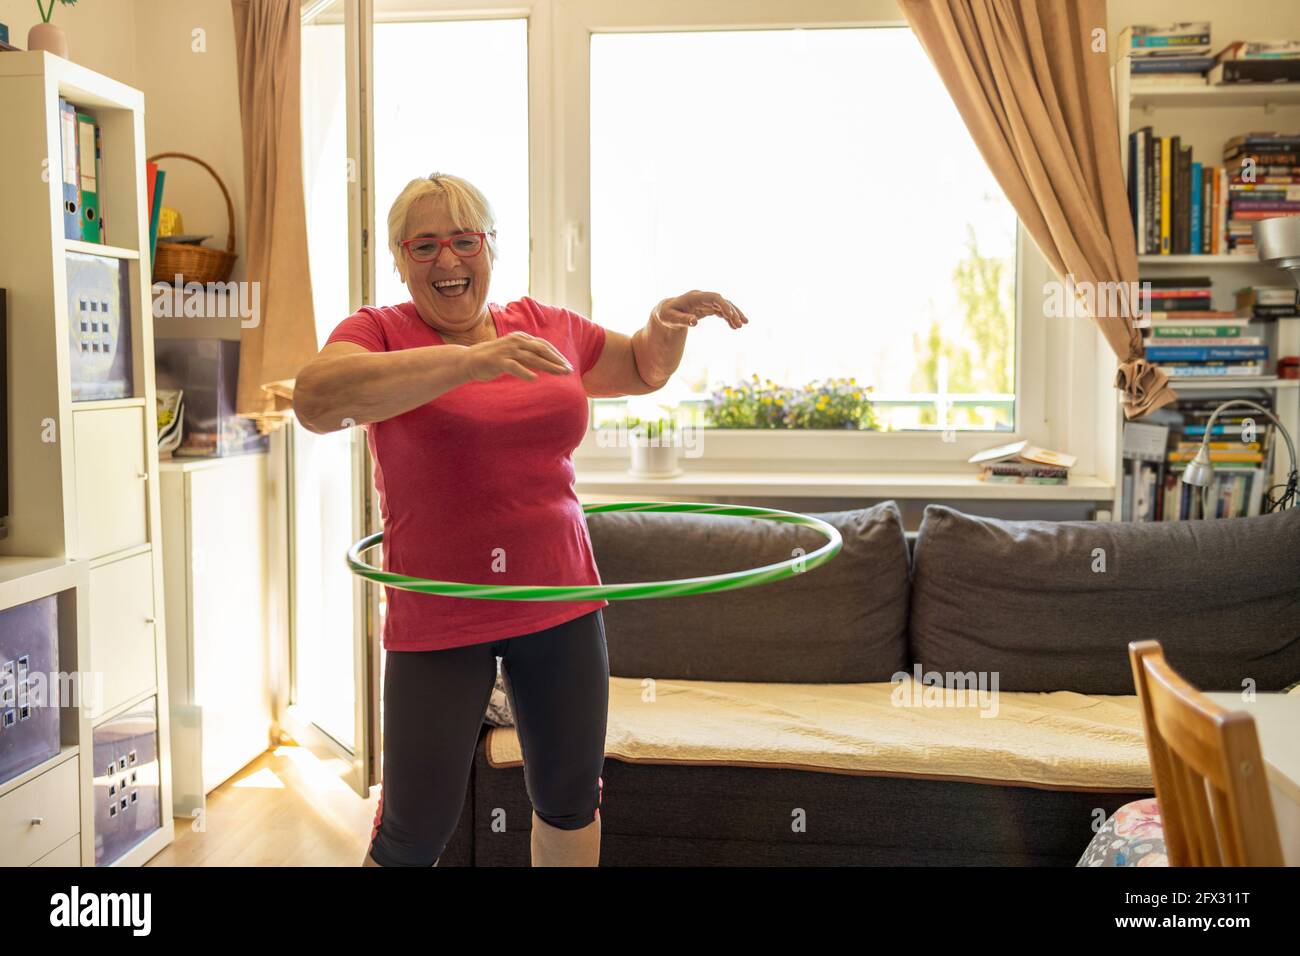 Older woman hula hooping at home Stock Photo